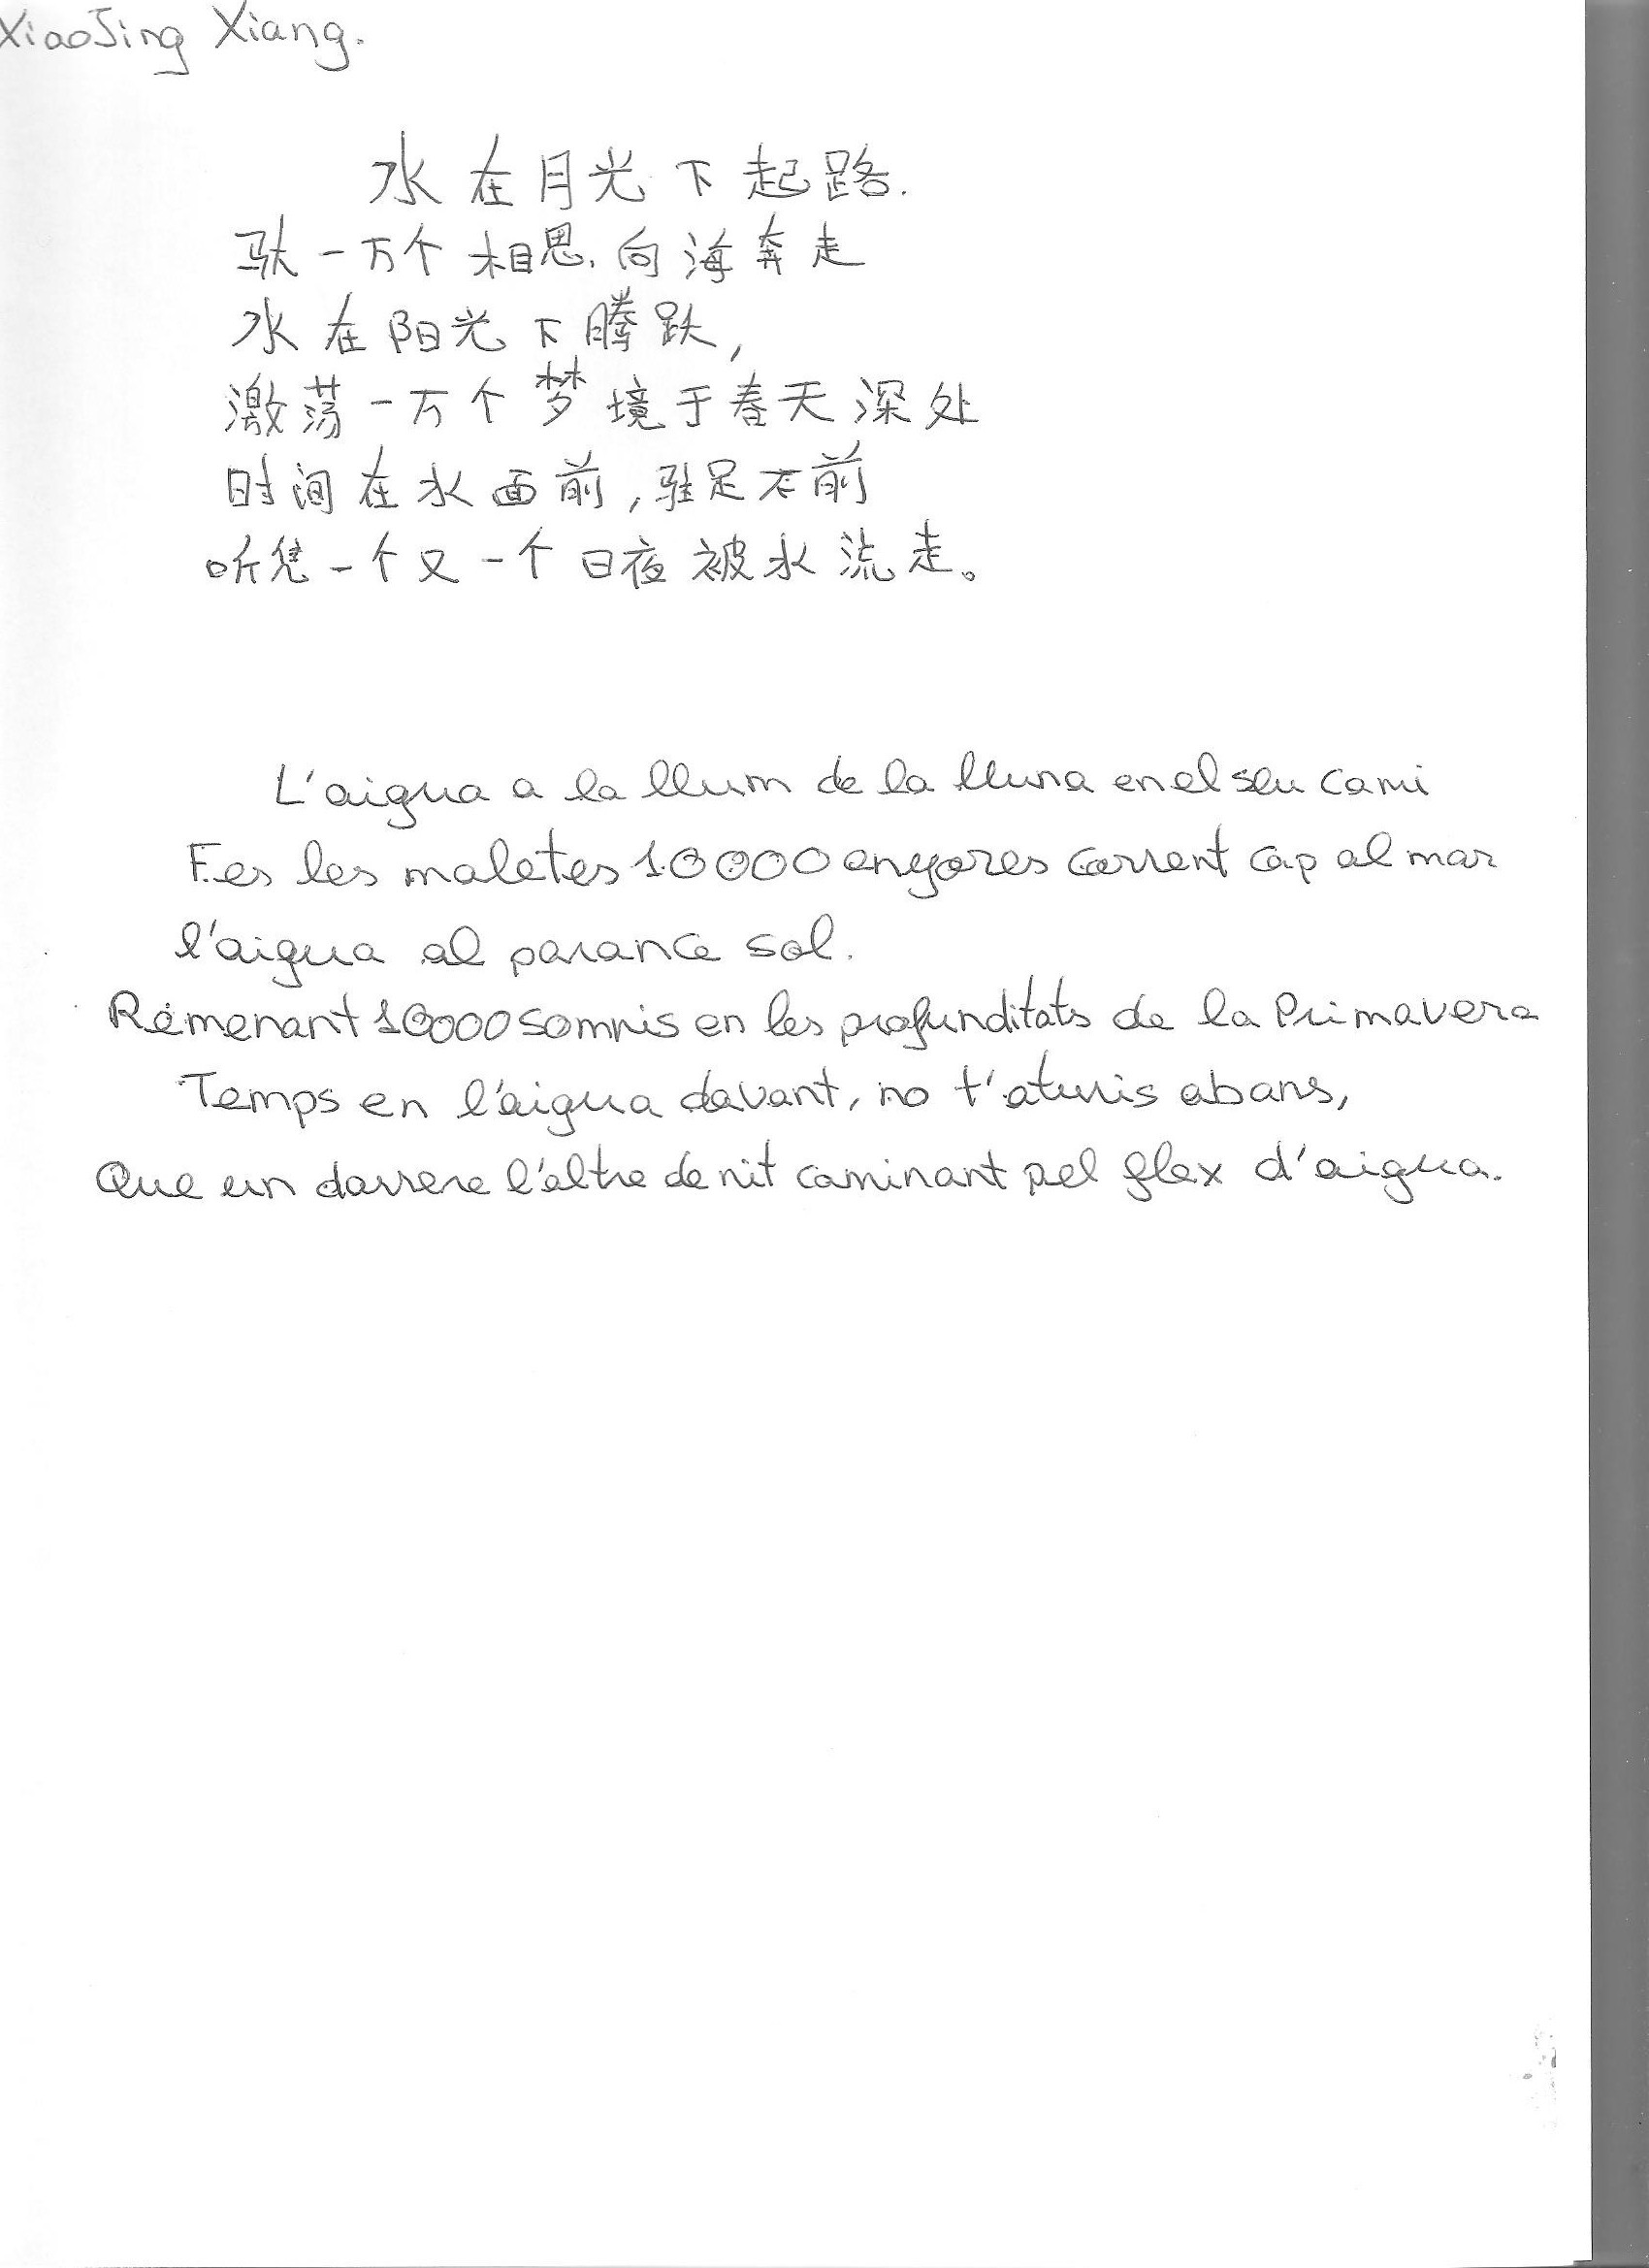 Poema de Xiao Jing Xian